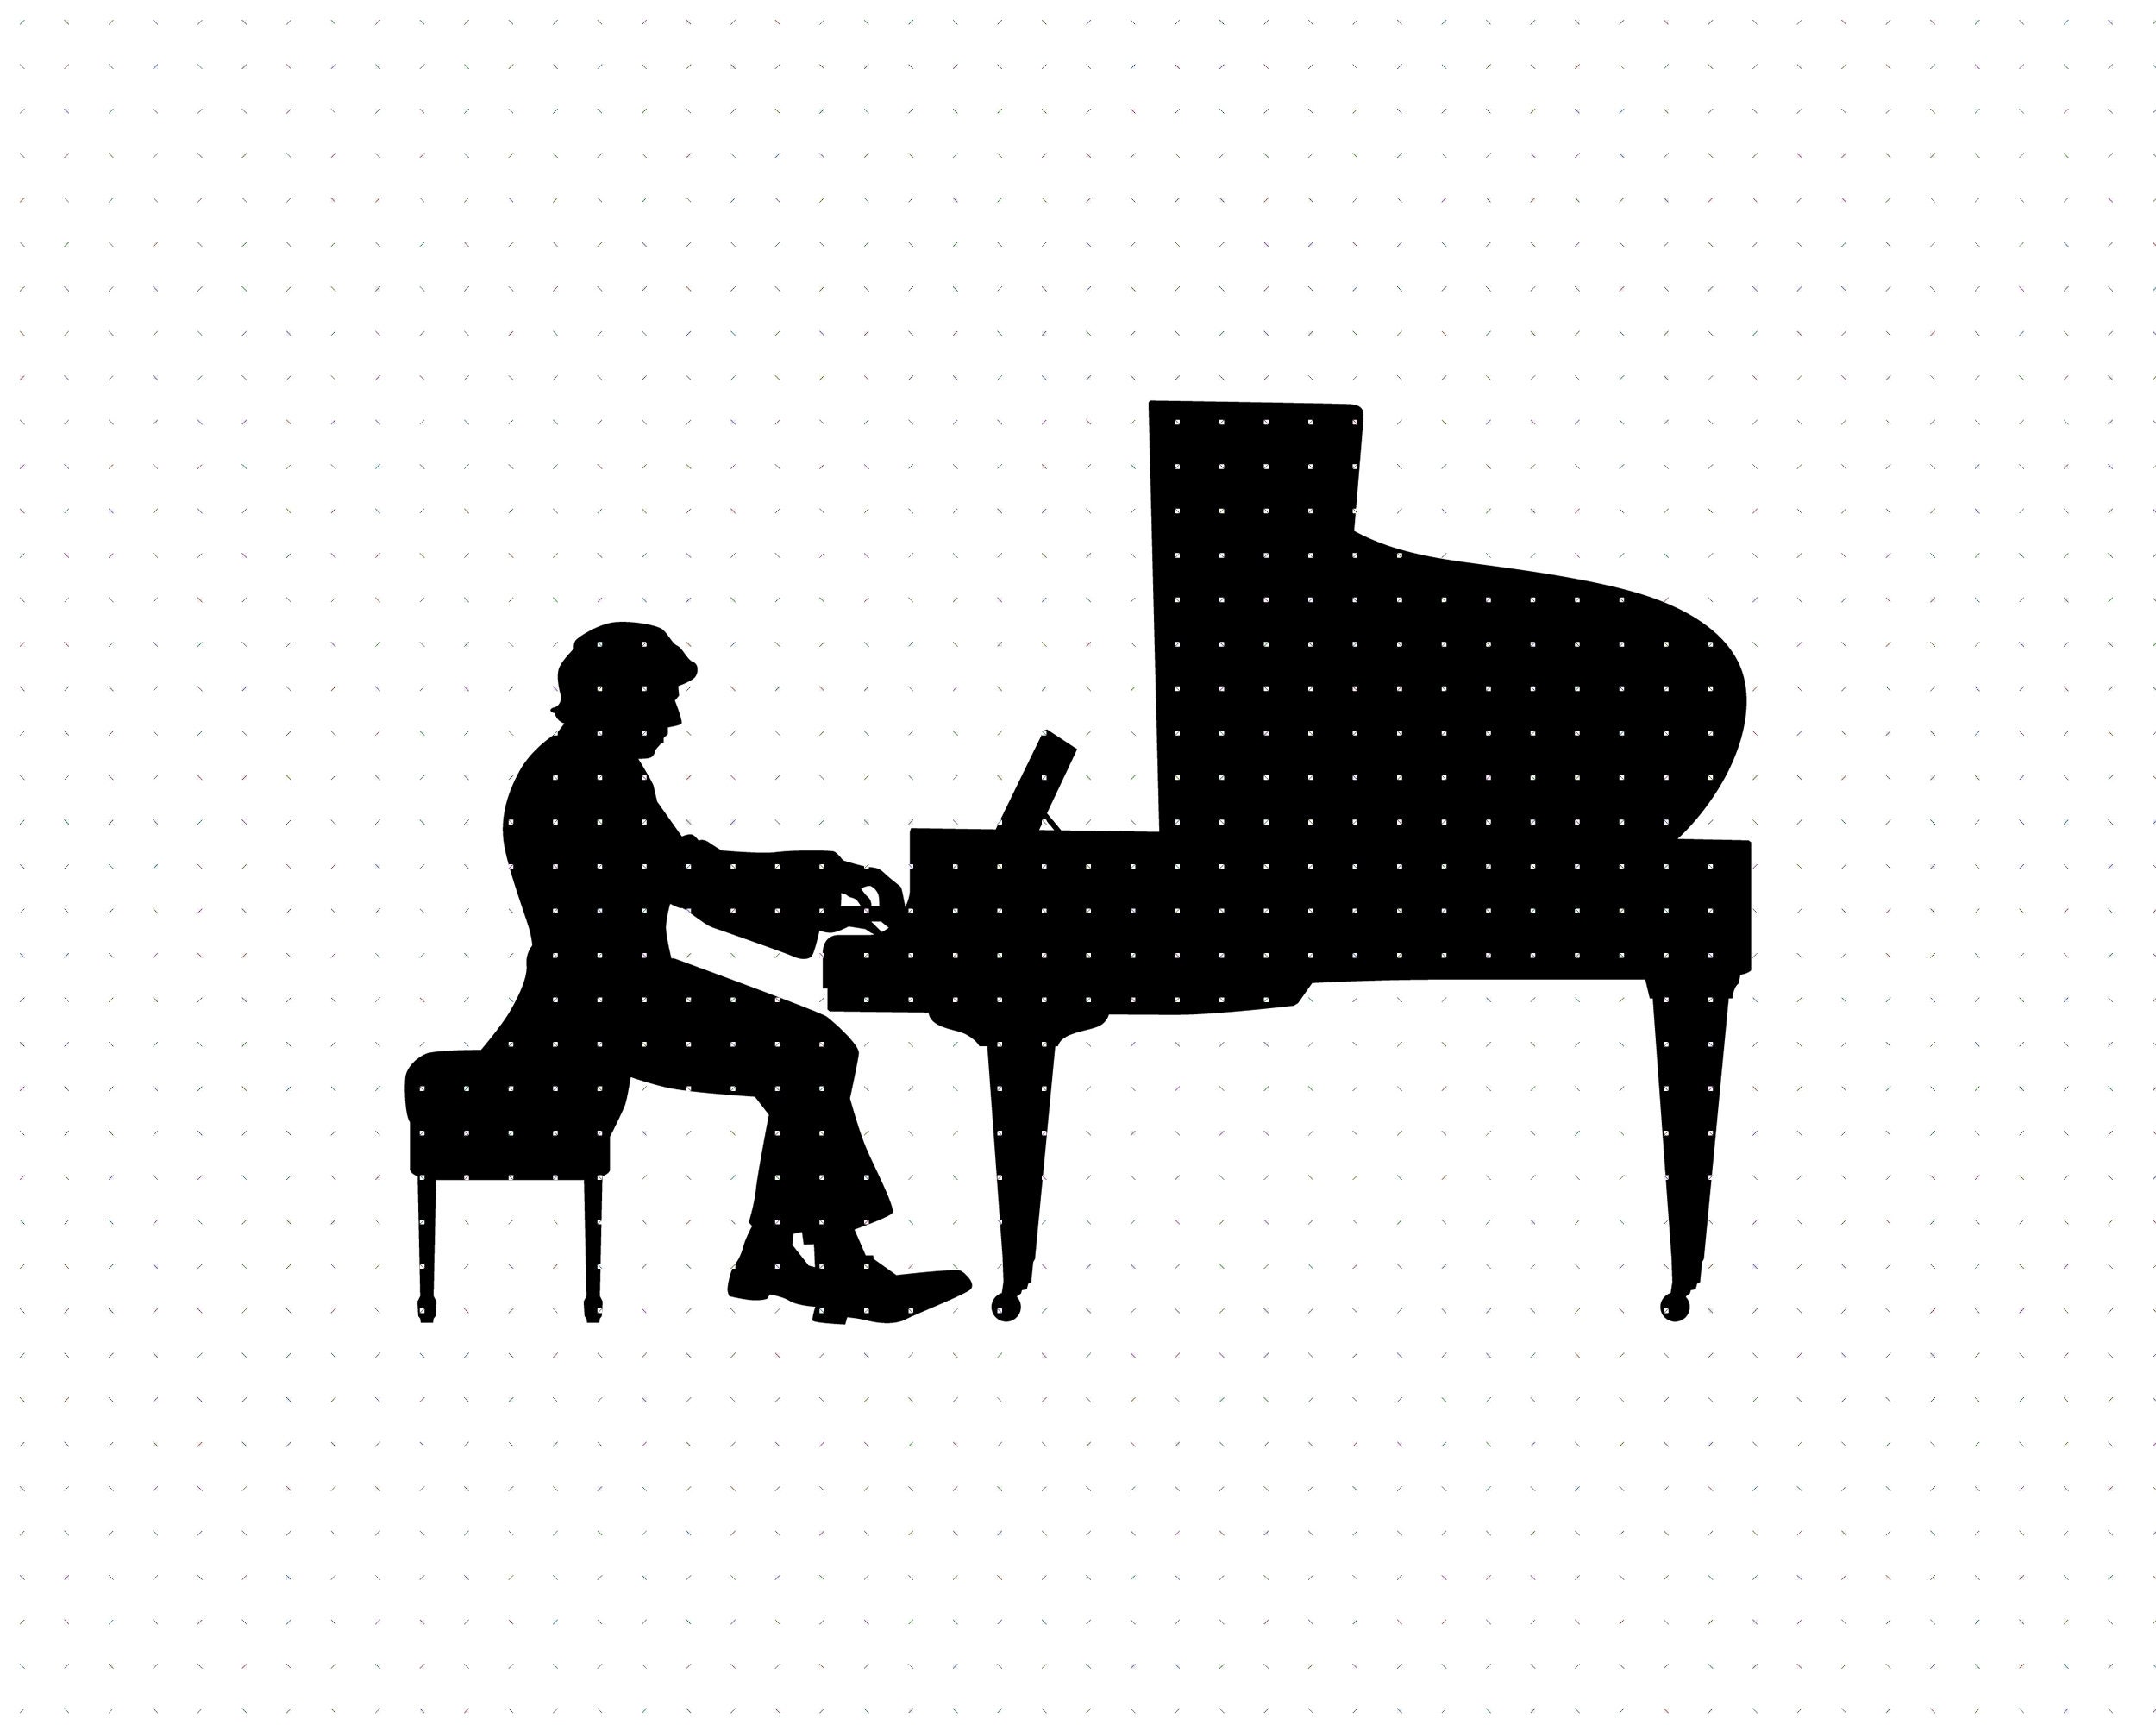 Touches de piano - image vectorielle - TemplateMonster